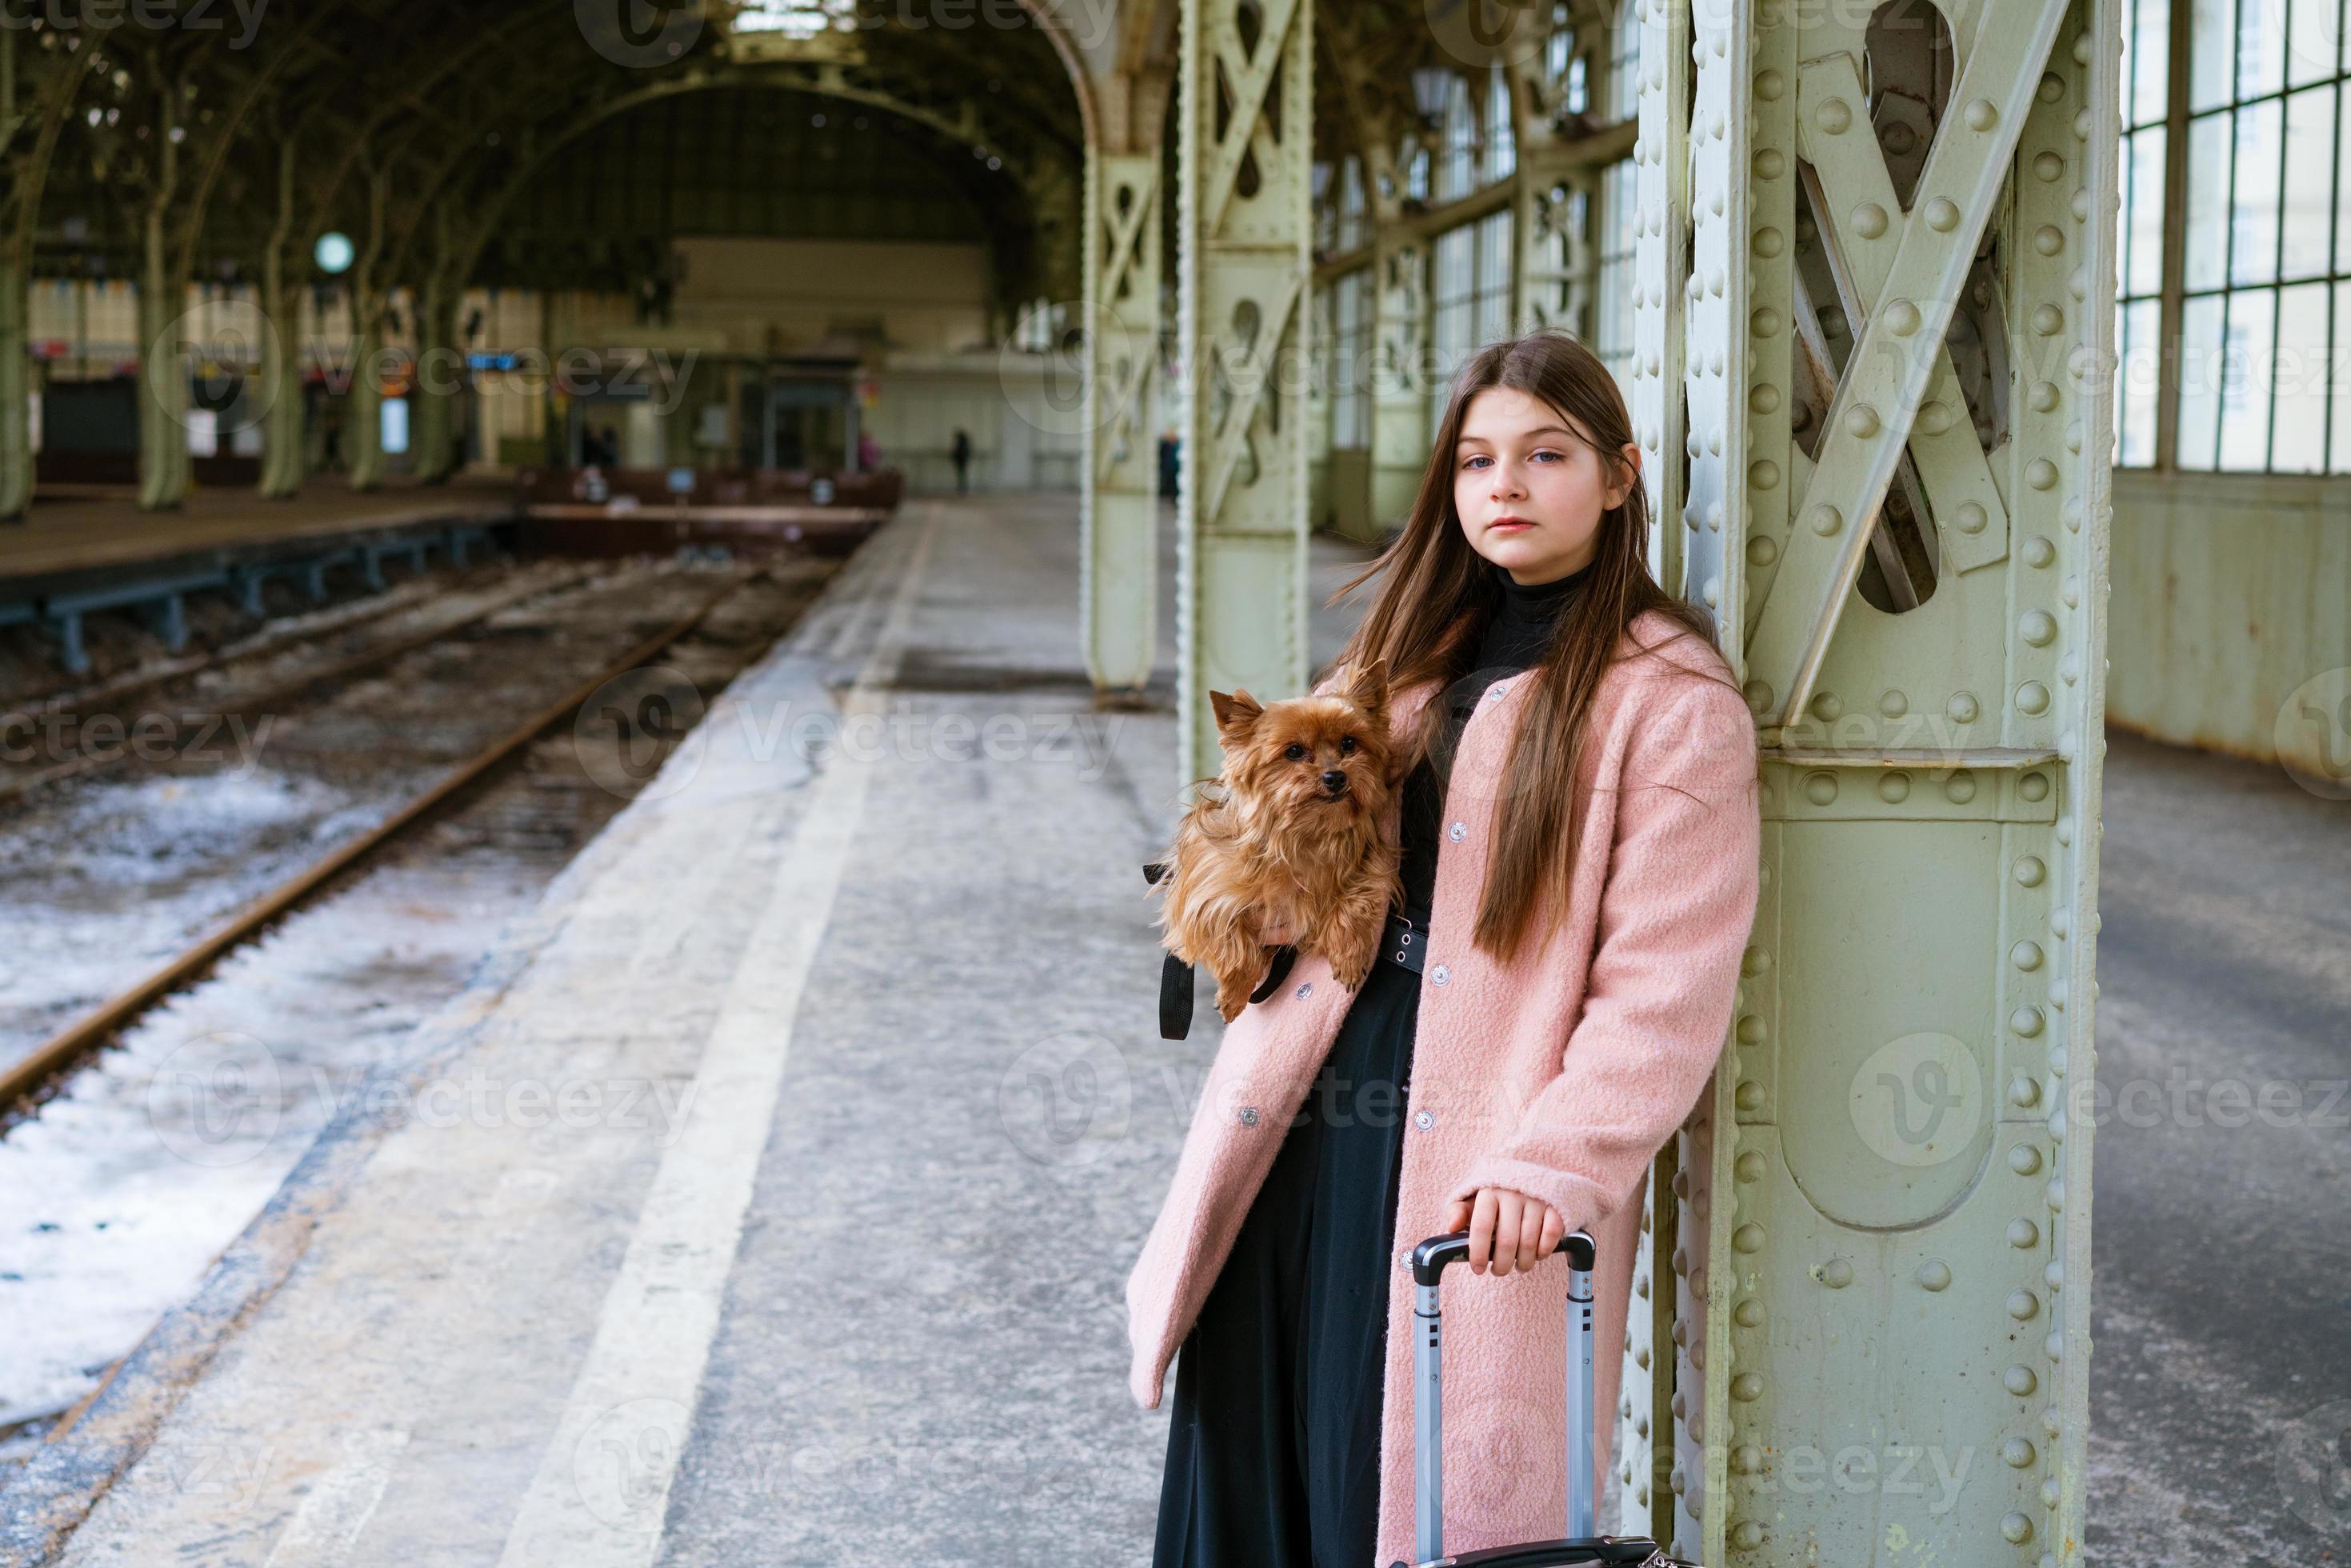 bella giovane donna turistica casual con cane e valigia in attesa del treno foto